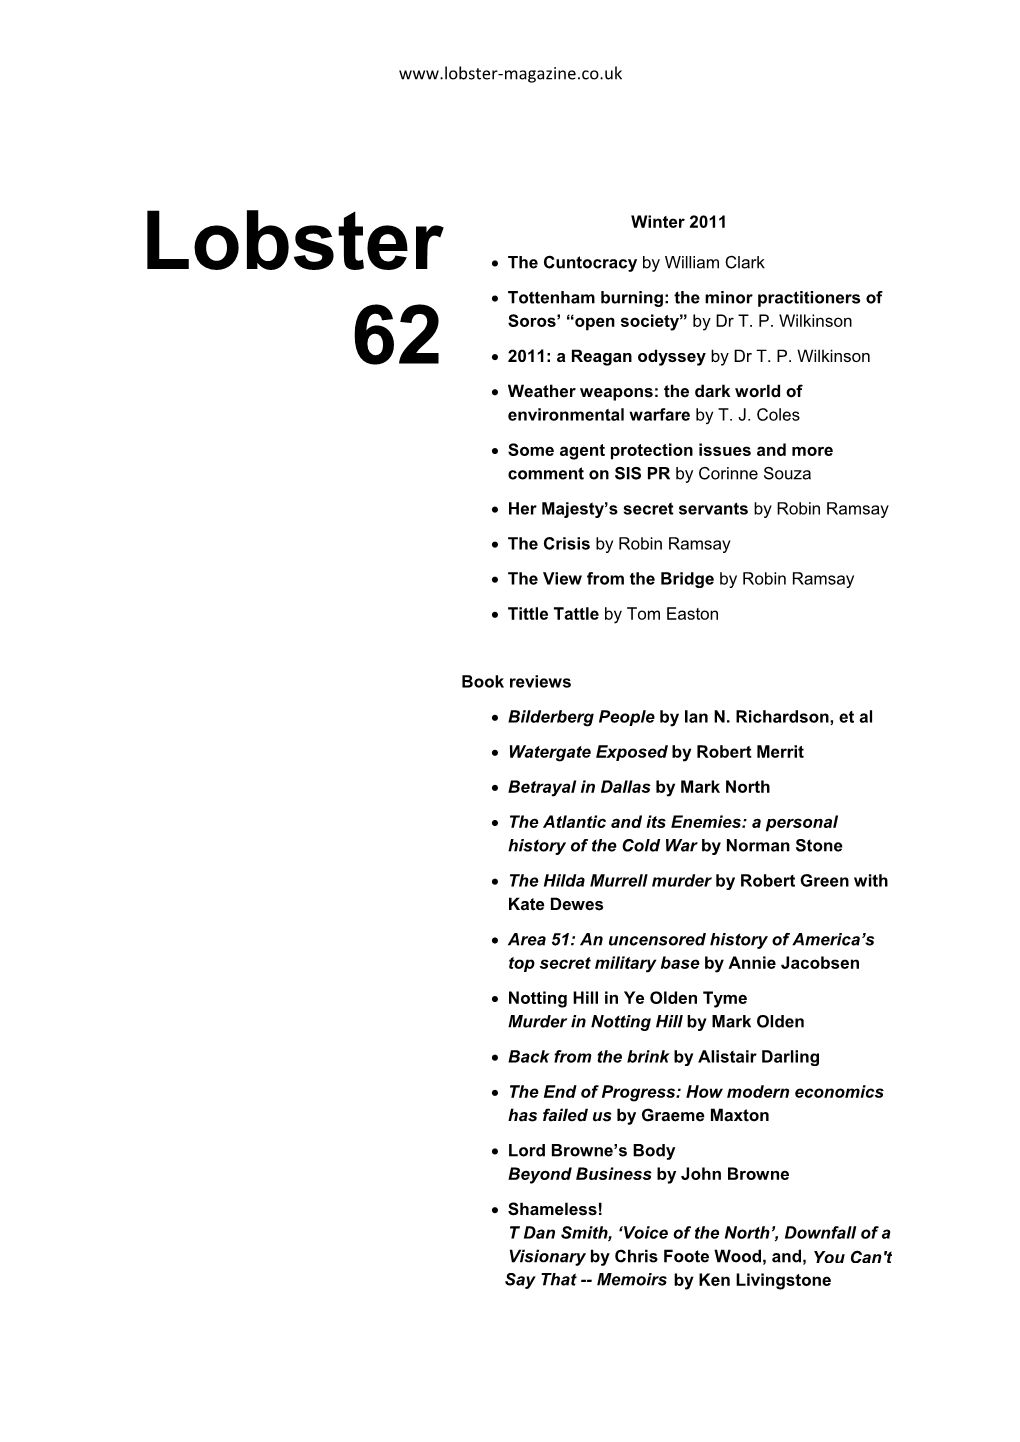 Lobster #62 (Winter 2011)